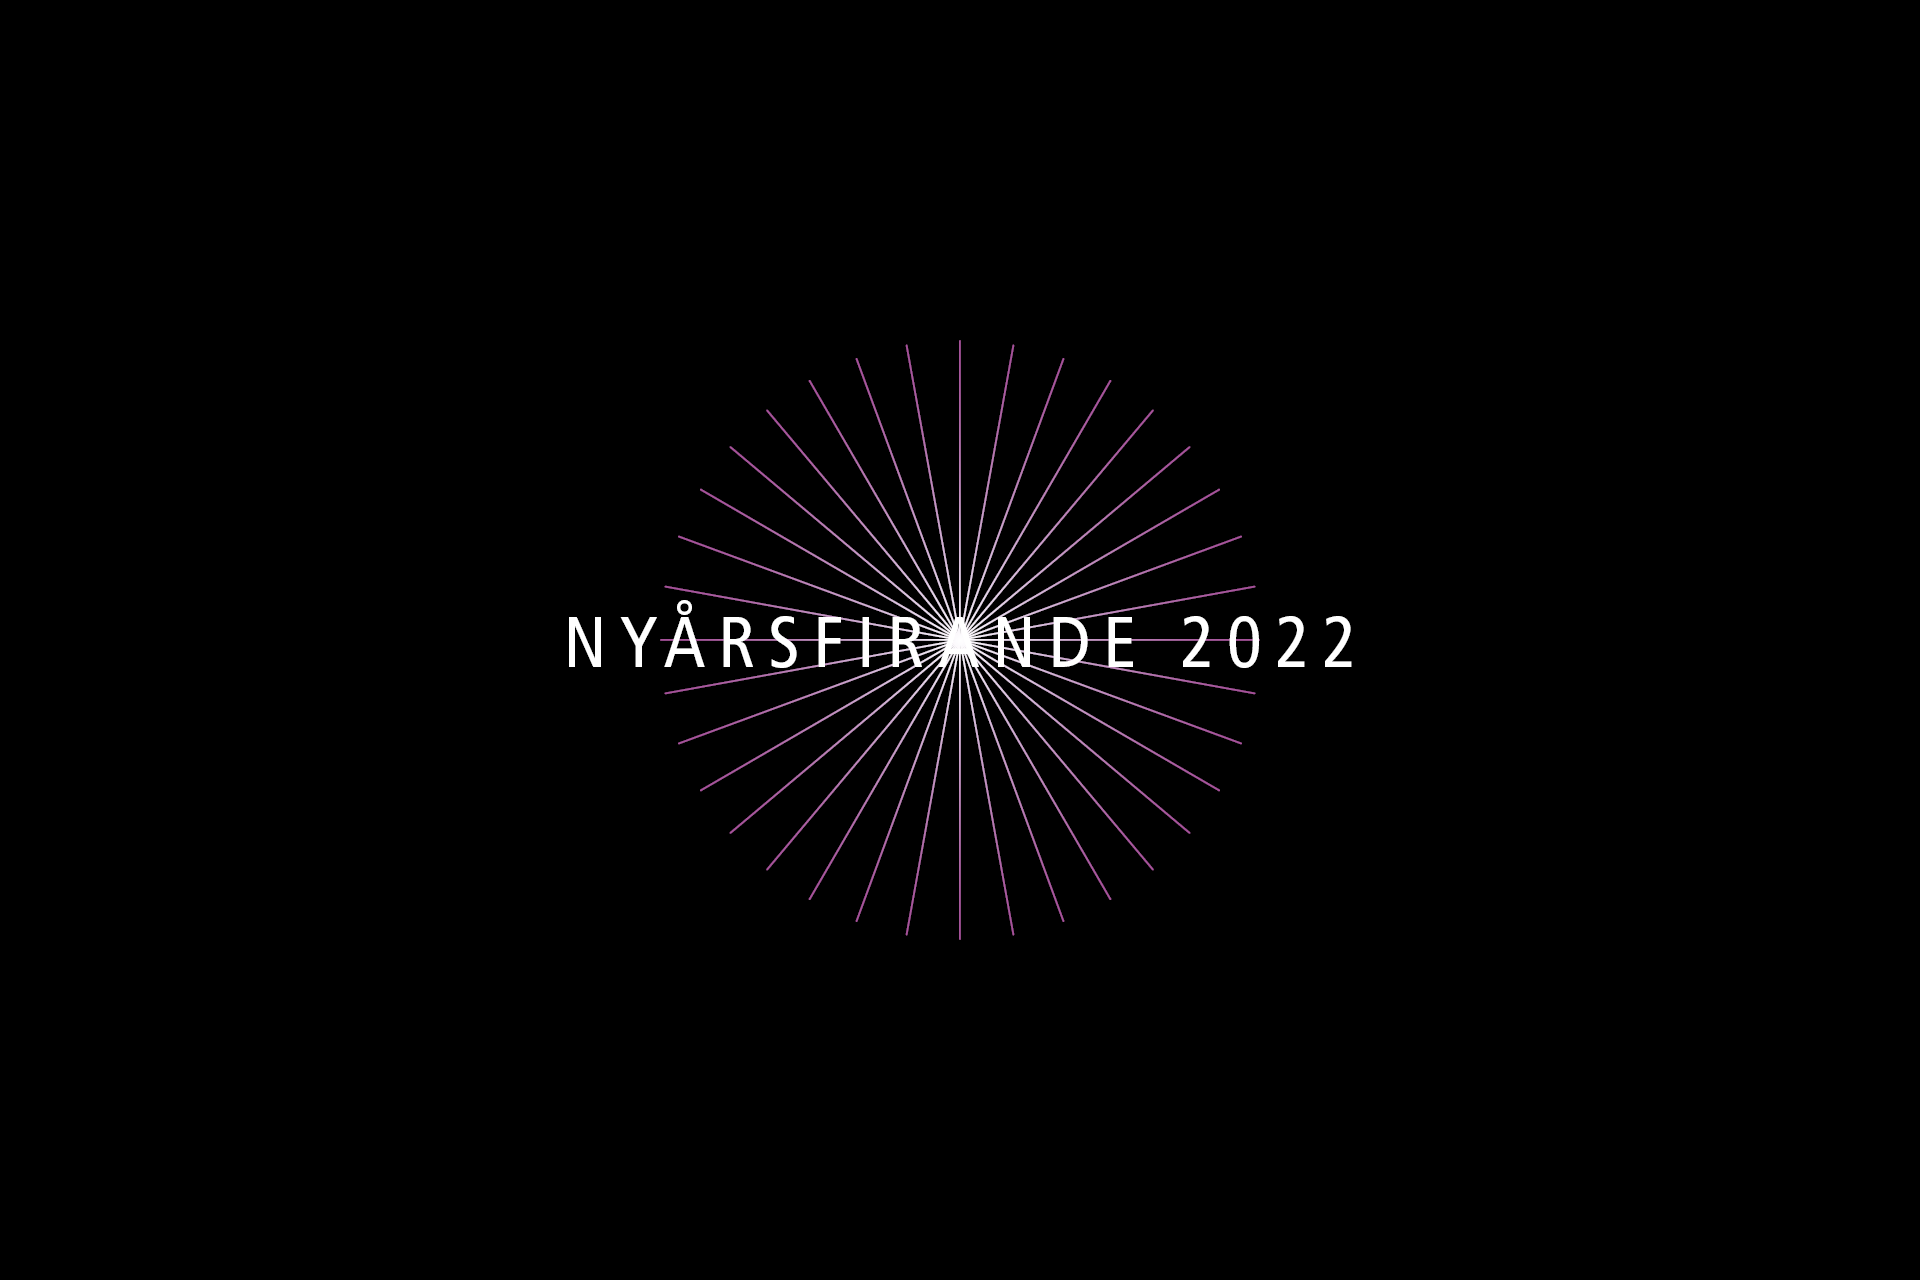 Logga nyårsfirande 2022